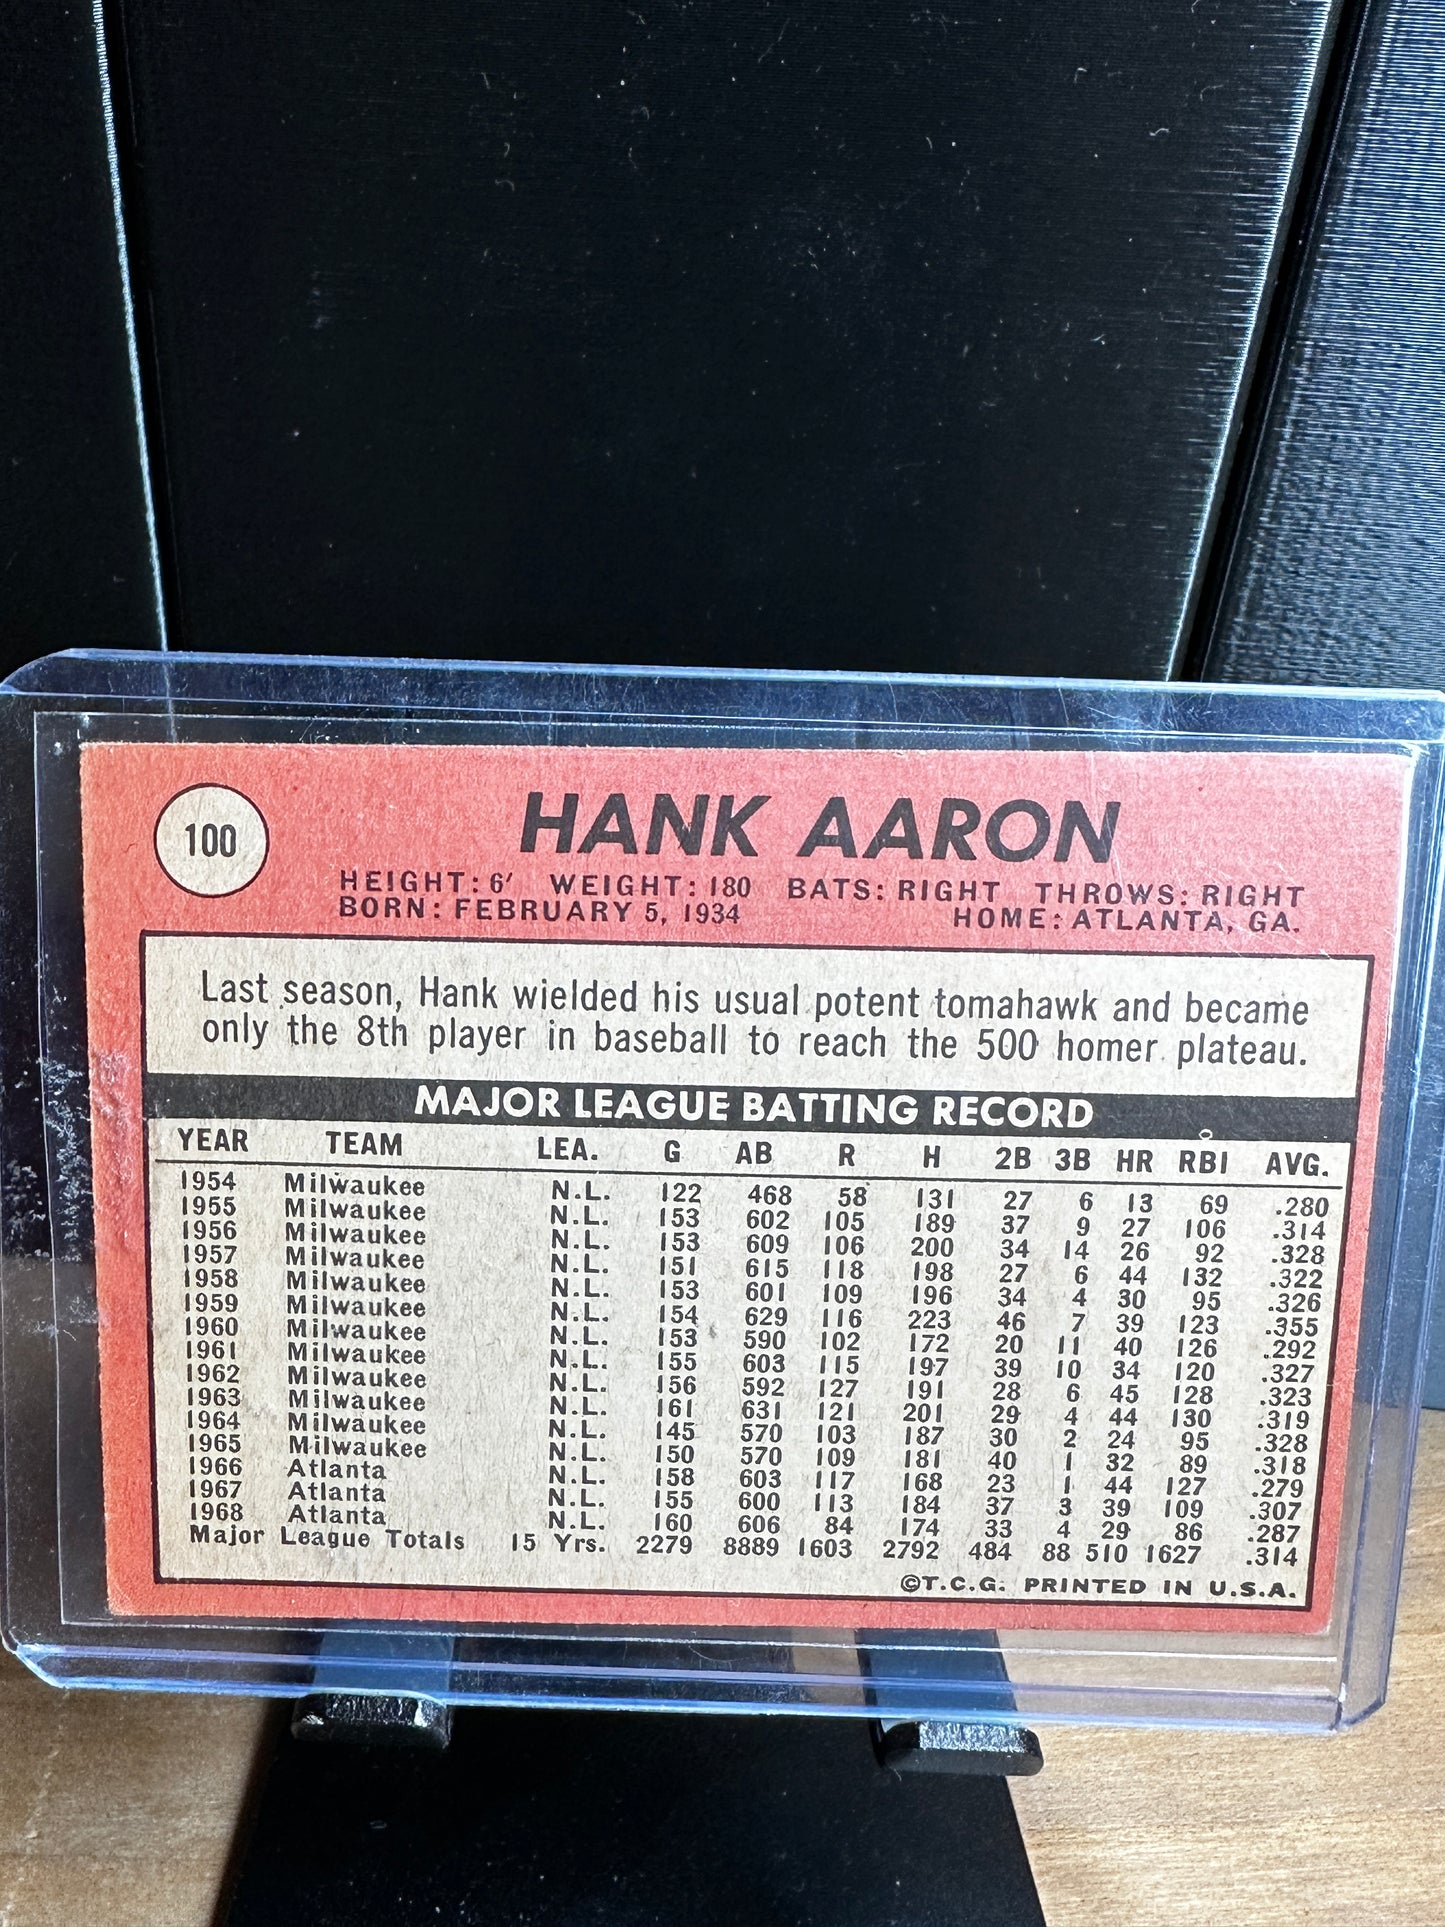 1969 TOPPS BASEBALL CARD #100 HANK AARON